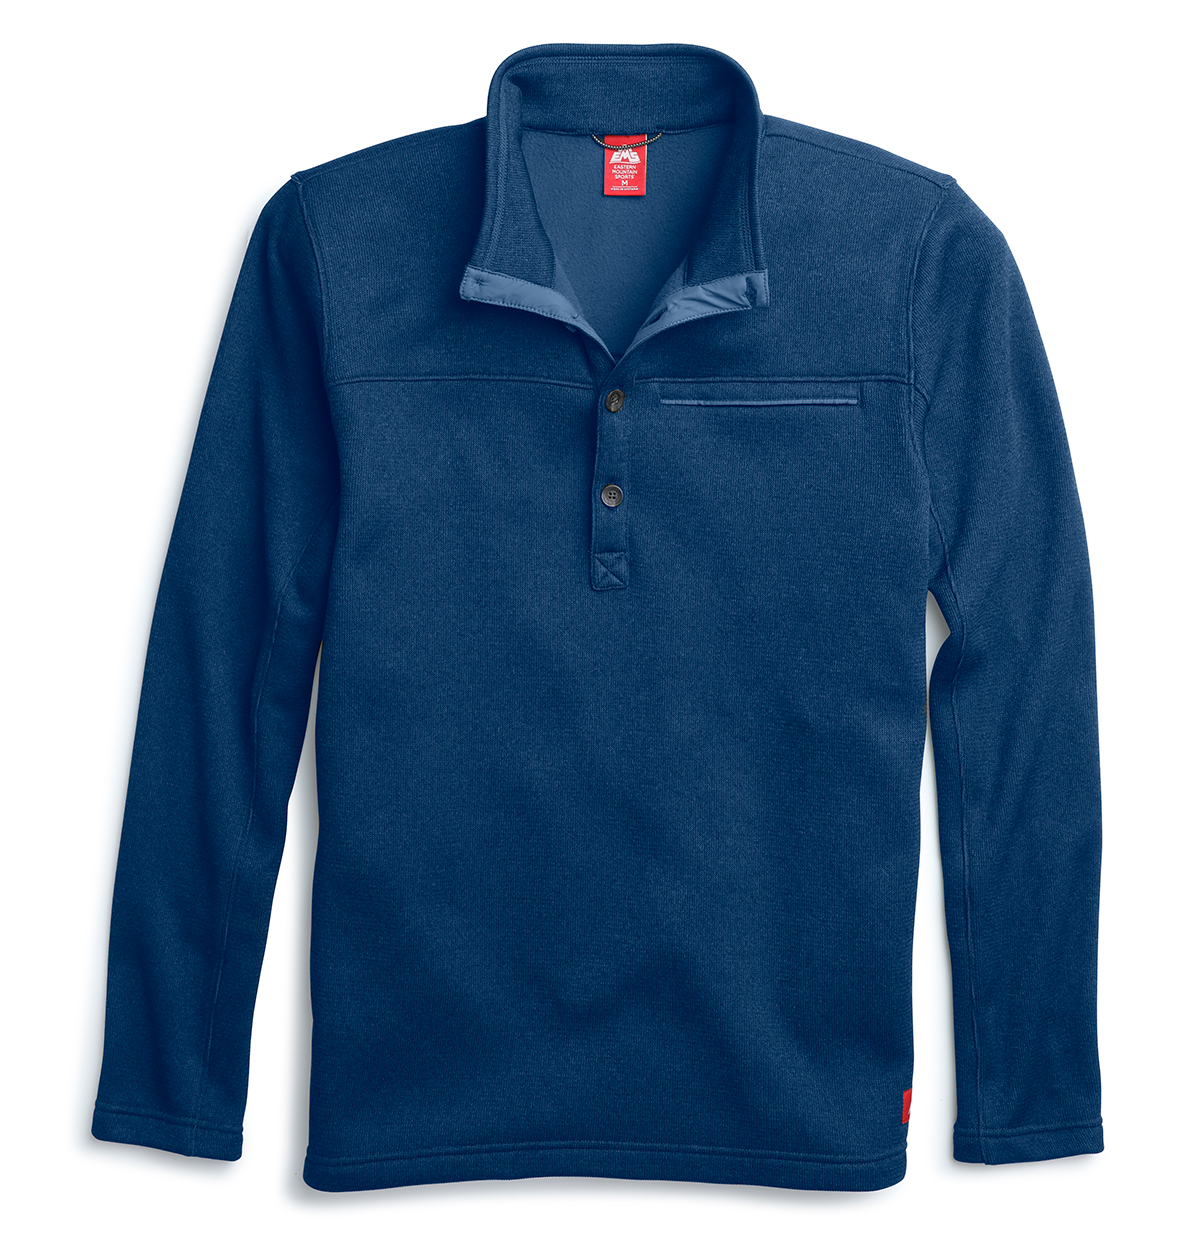 Ems Men's Destination 4-Button Pullover - Blue, XL